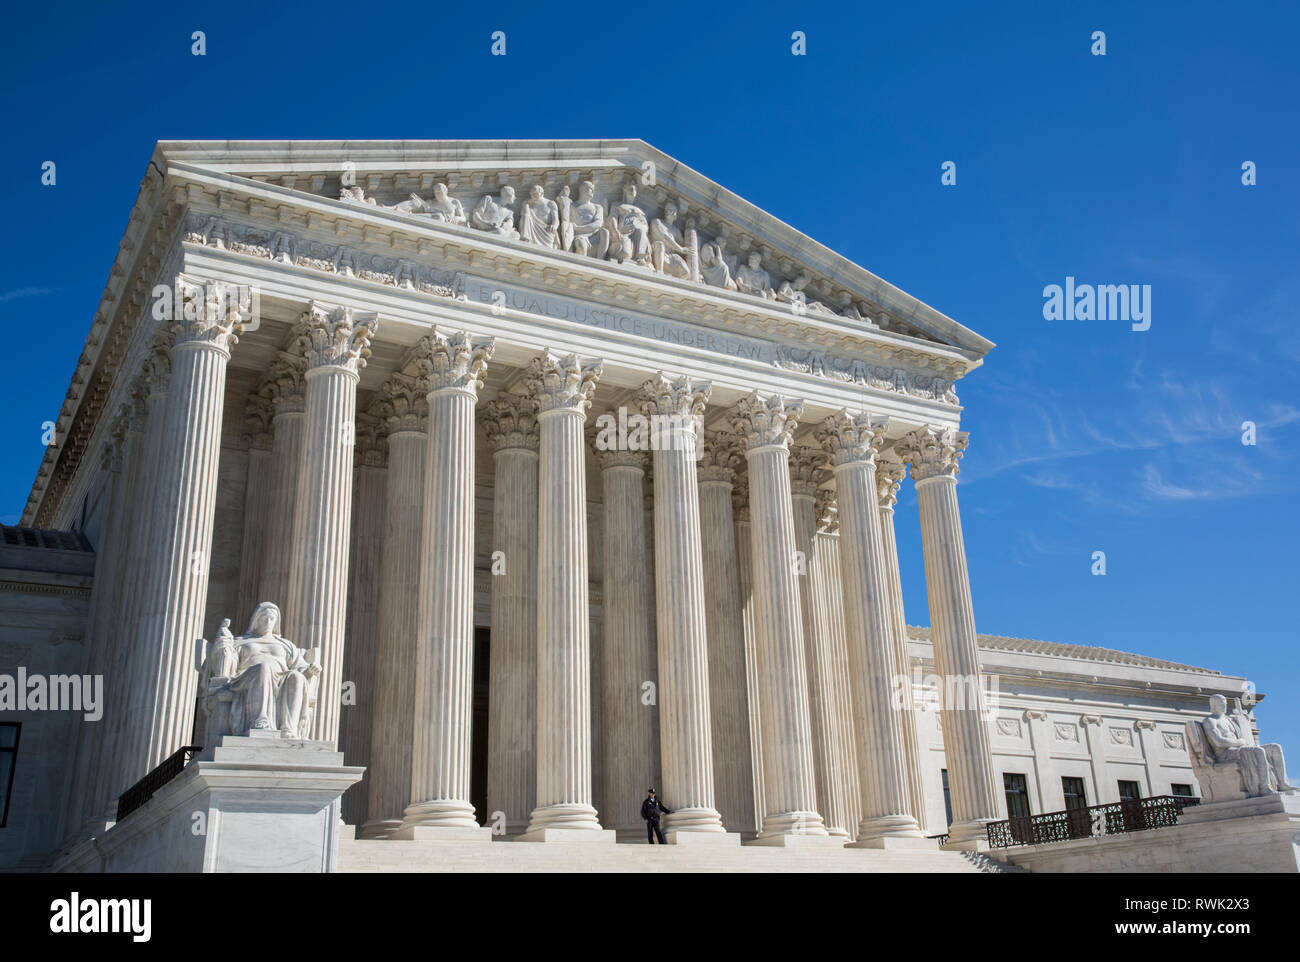 United States Supreme Court Building; Washington DC, United States of America Stock Photo